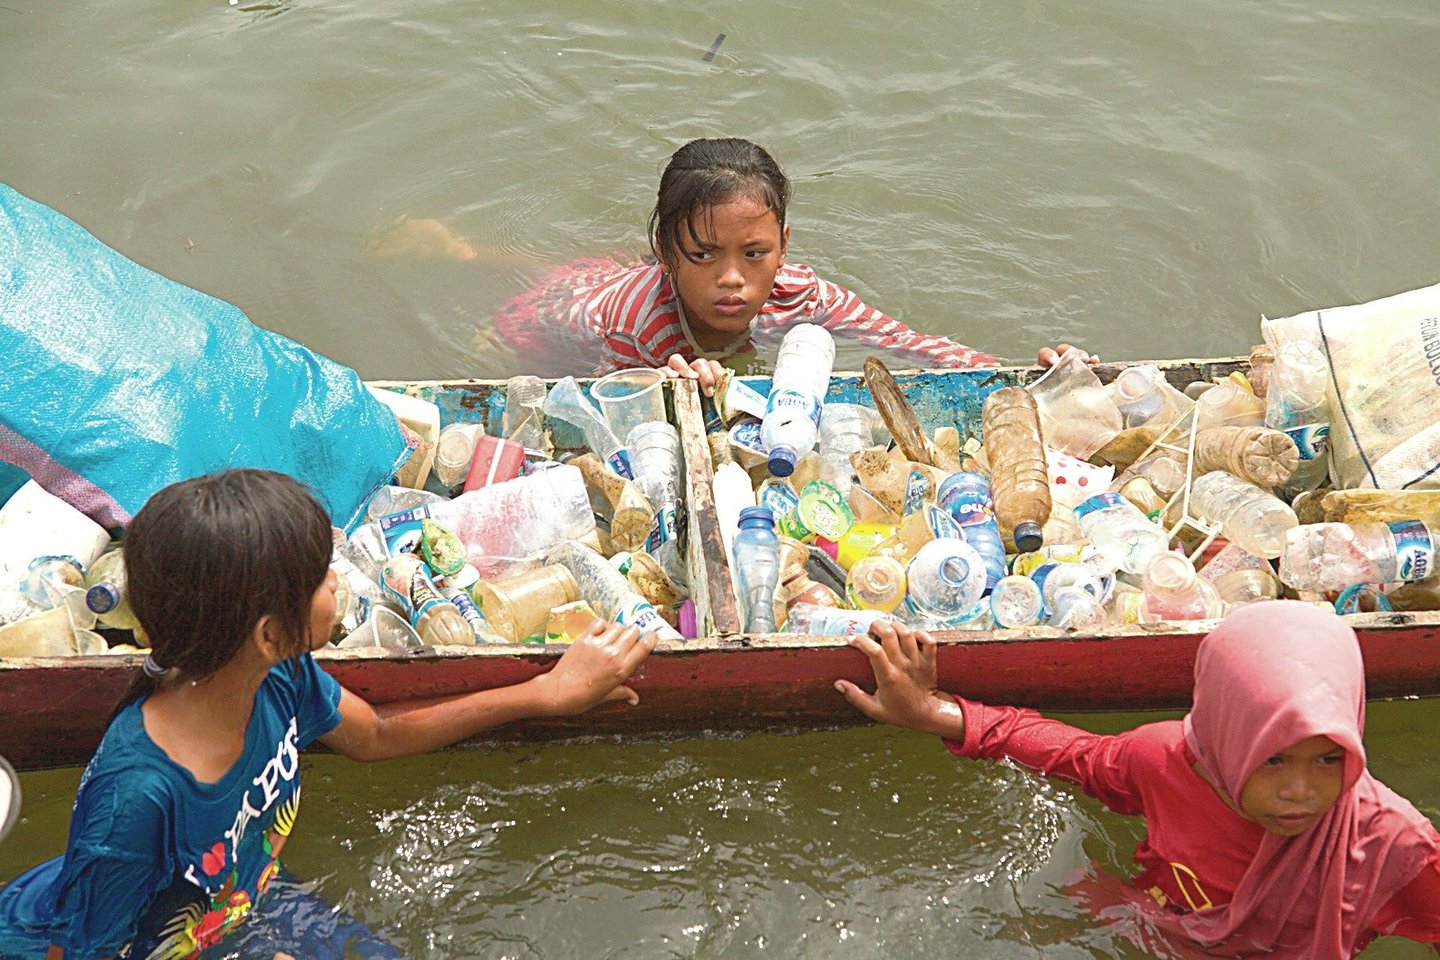  Plastiko prekybos posūkis į Pietryčių Aziją turėjo stulbinamų padarinių – užterštos vandens atsargos, sunaikintas derlius, kvėpavimo takų ligos dėl deginamo plastiko ir augantis organizuotas nusikalstamumas<br> AFP/Scanpix nuotr.